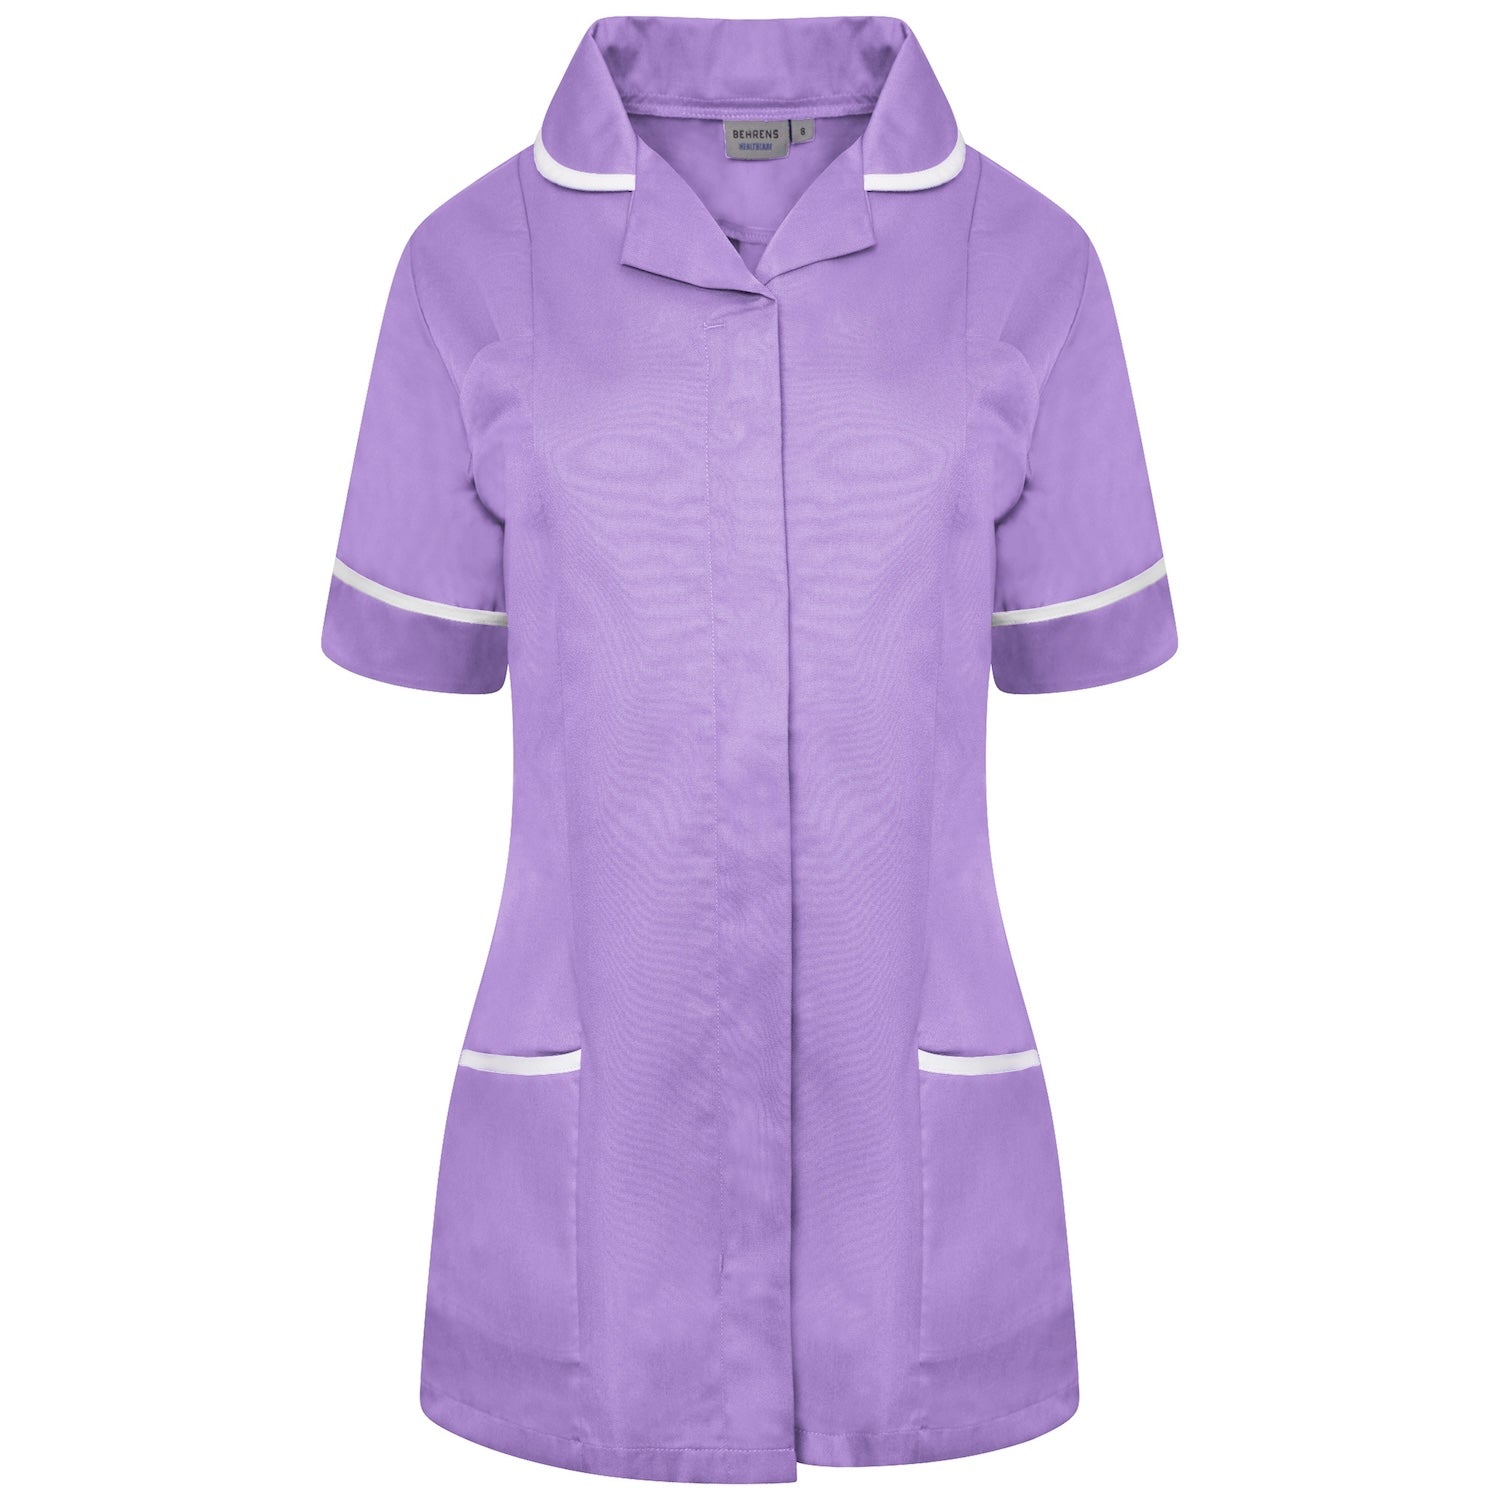 Ladies Healthcare Tunic | Round Collar | Lilac/White Trim